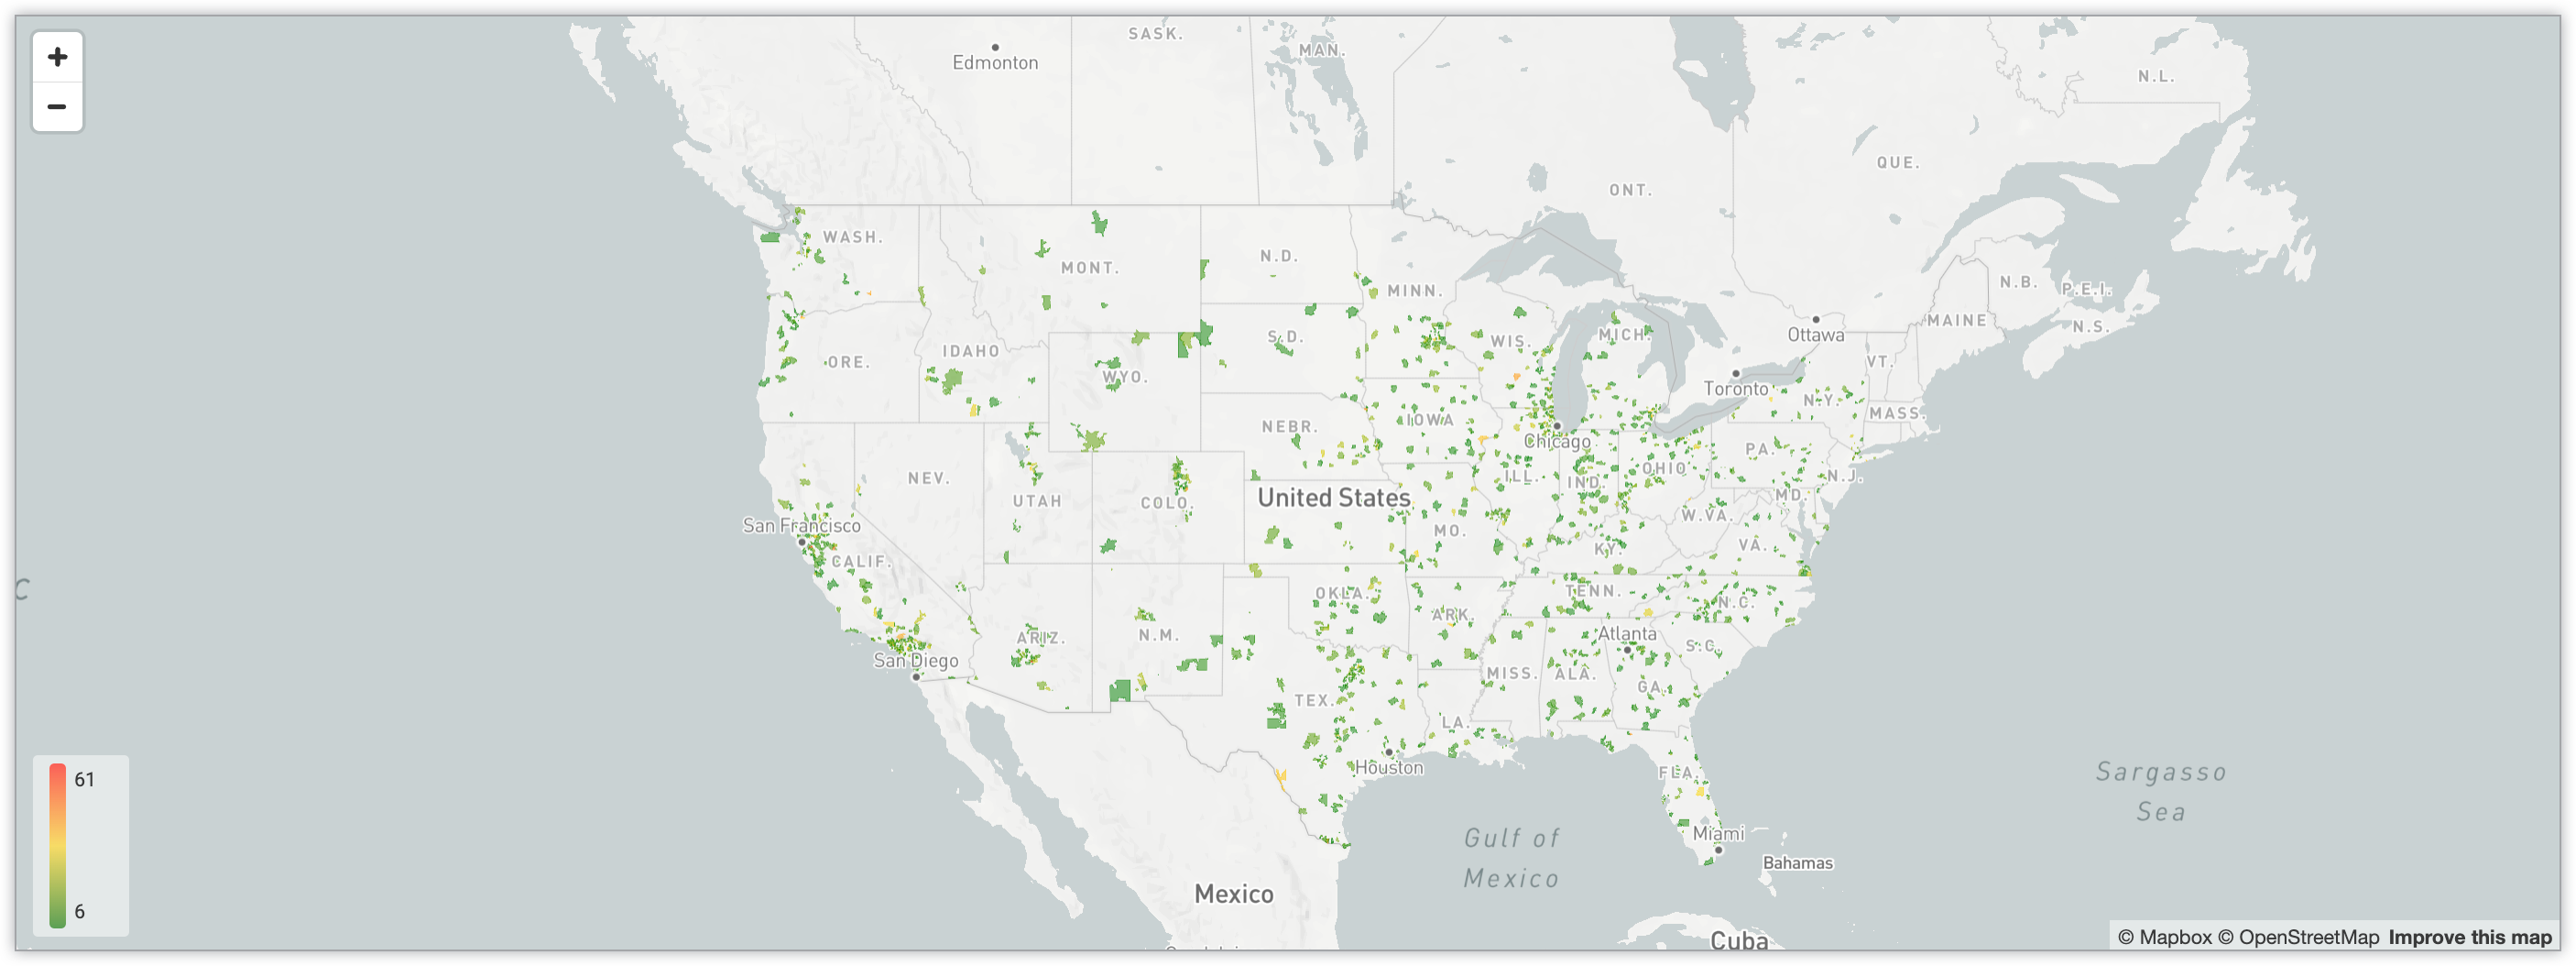 Mappa interattiva che mostra il numero di utenti in tutti i codici postali degli Stati Uniti attraverso un sistema di codifica a colori a gradiente.